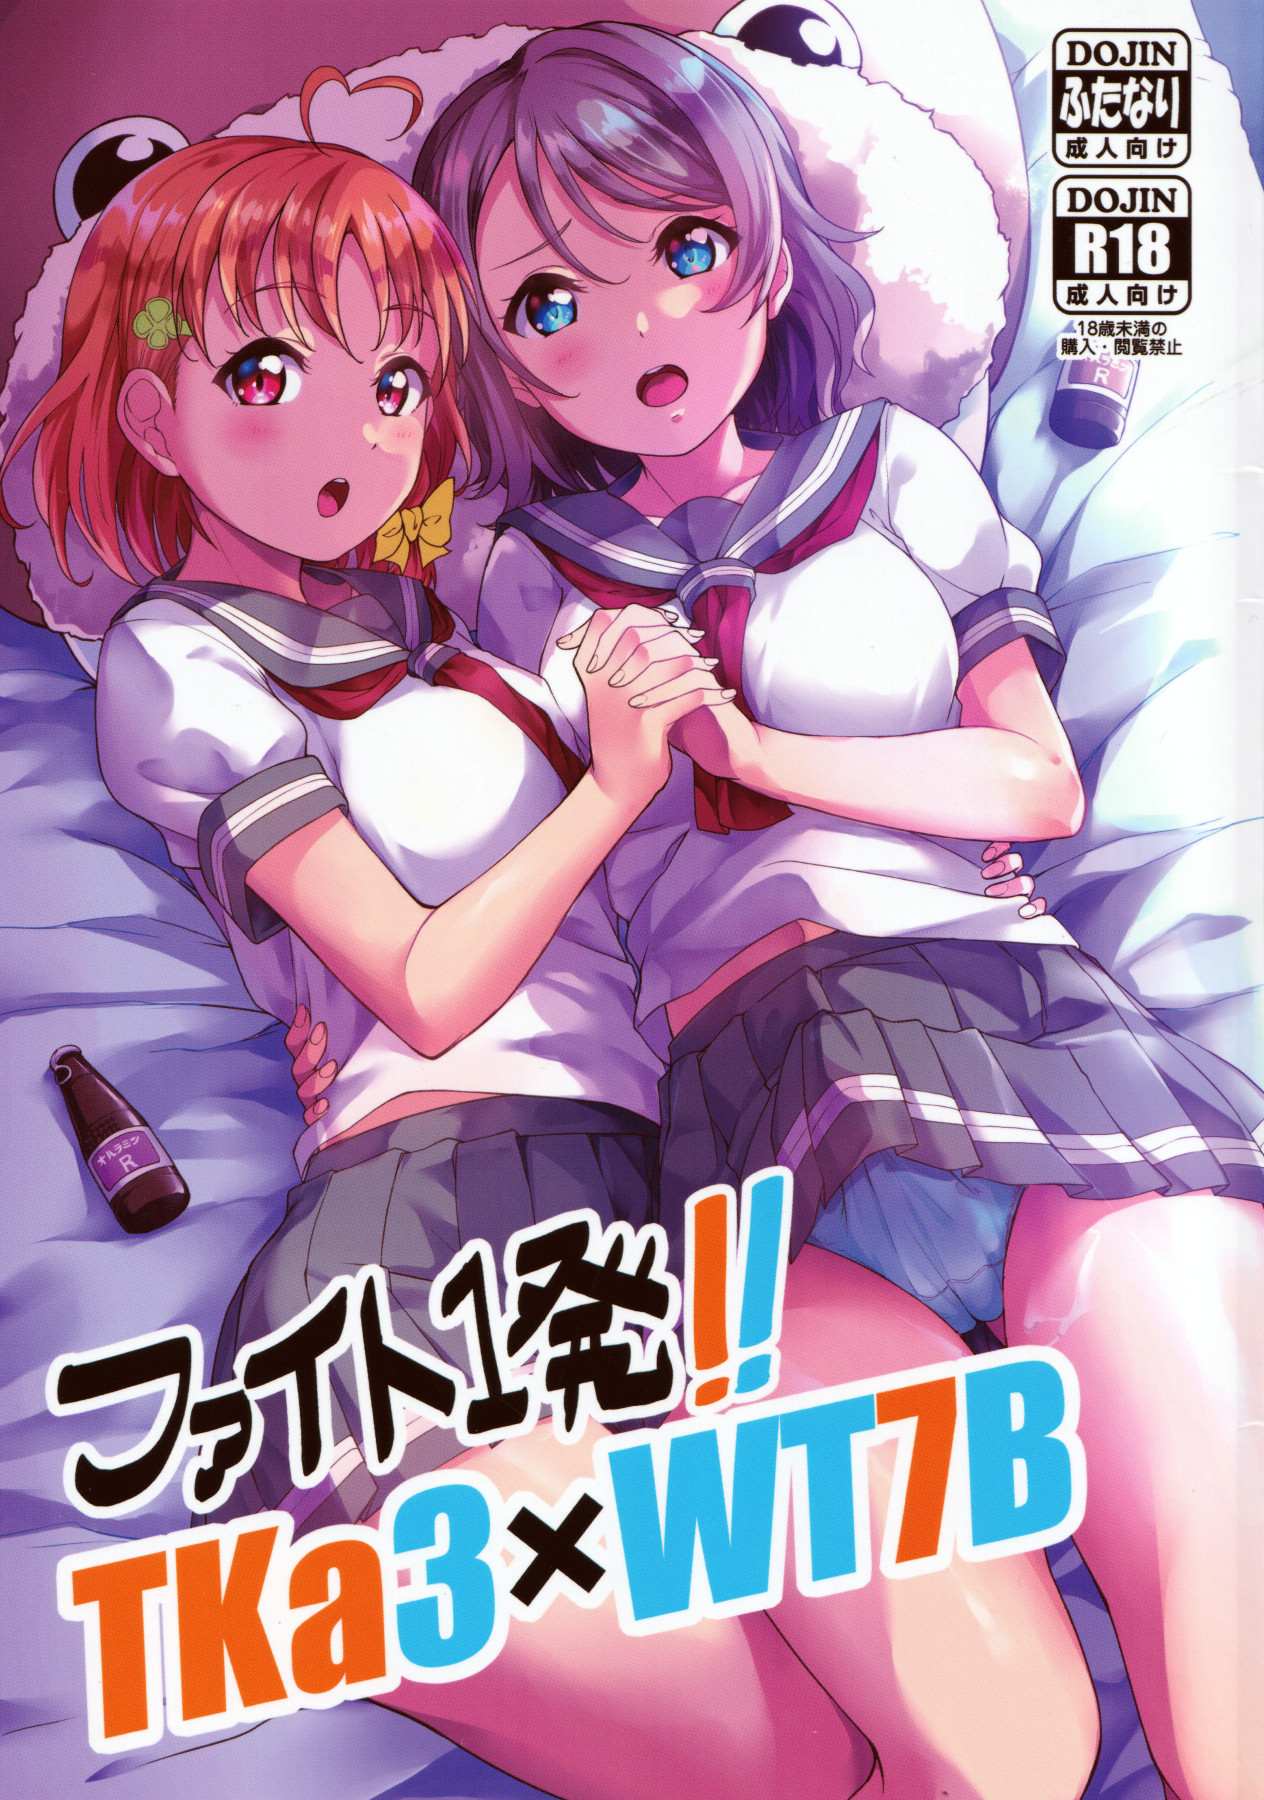 Hentai Manga Comic-Fight 1!! TKa3 x WT7B-Read-1